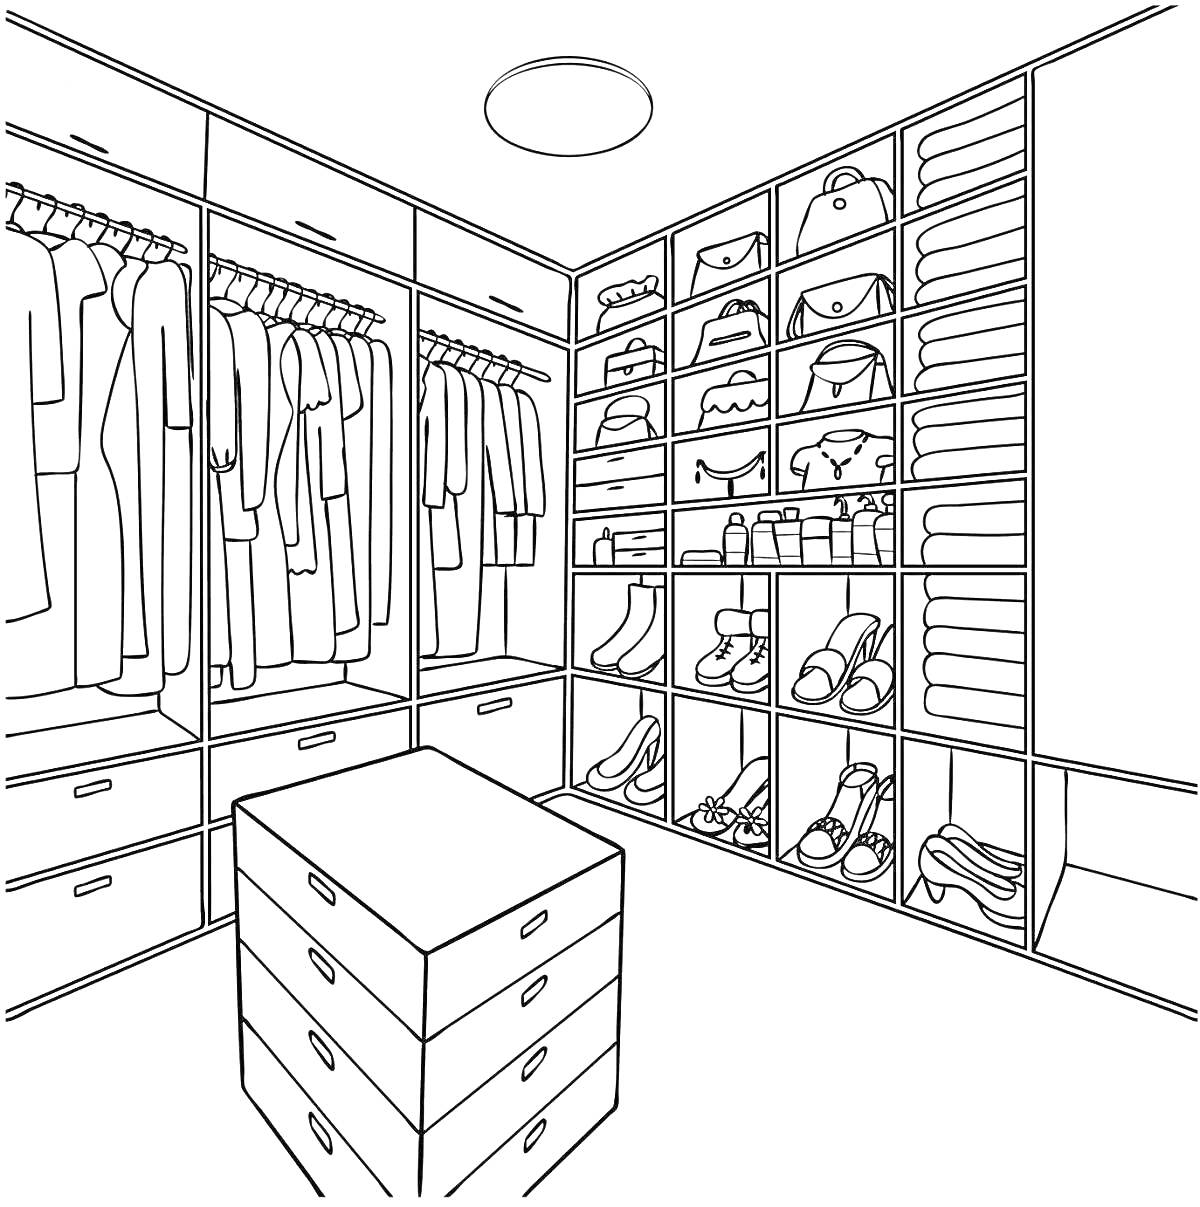 Раскраска Гардеробная комната с одеждой, полками, обувью, сумками, шляпами и ящиками